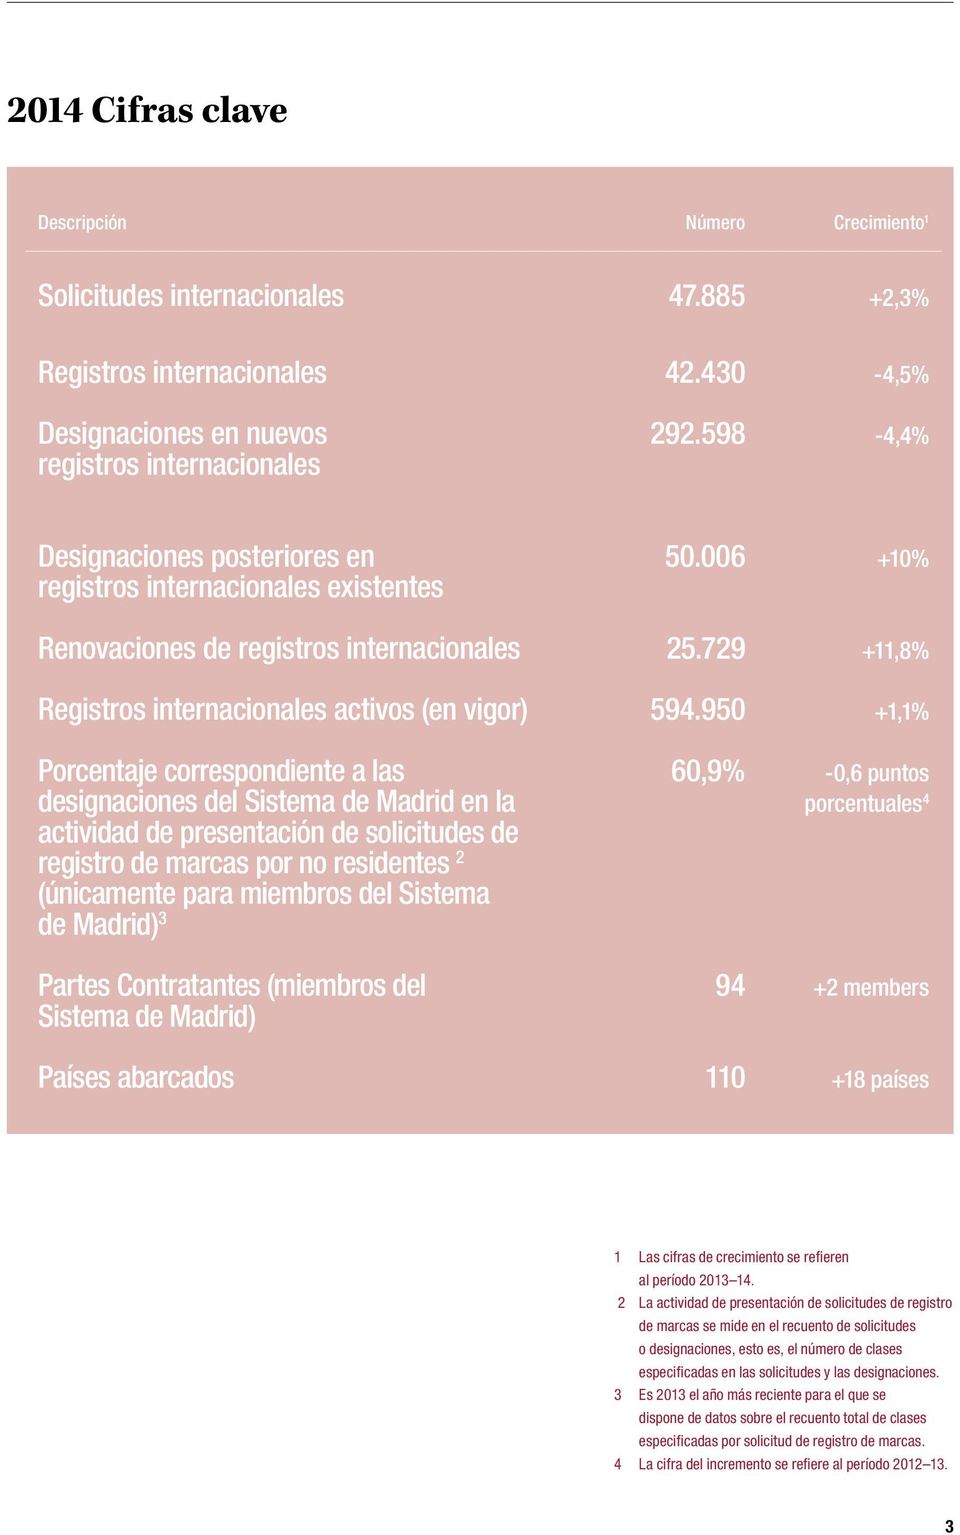 950 +1,1% Porcentaje correspondiente a las designaciones del Sistema de Madrid en la actividad de presentación de solicitudes de registro de marcas por no residentes 2 (únicamente para miembros del